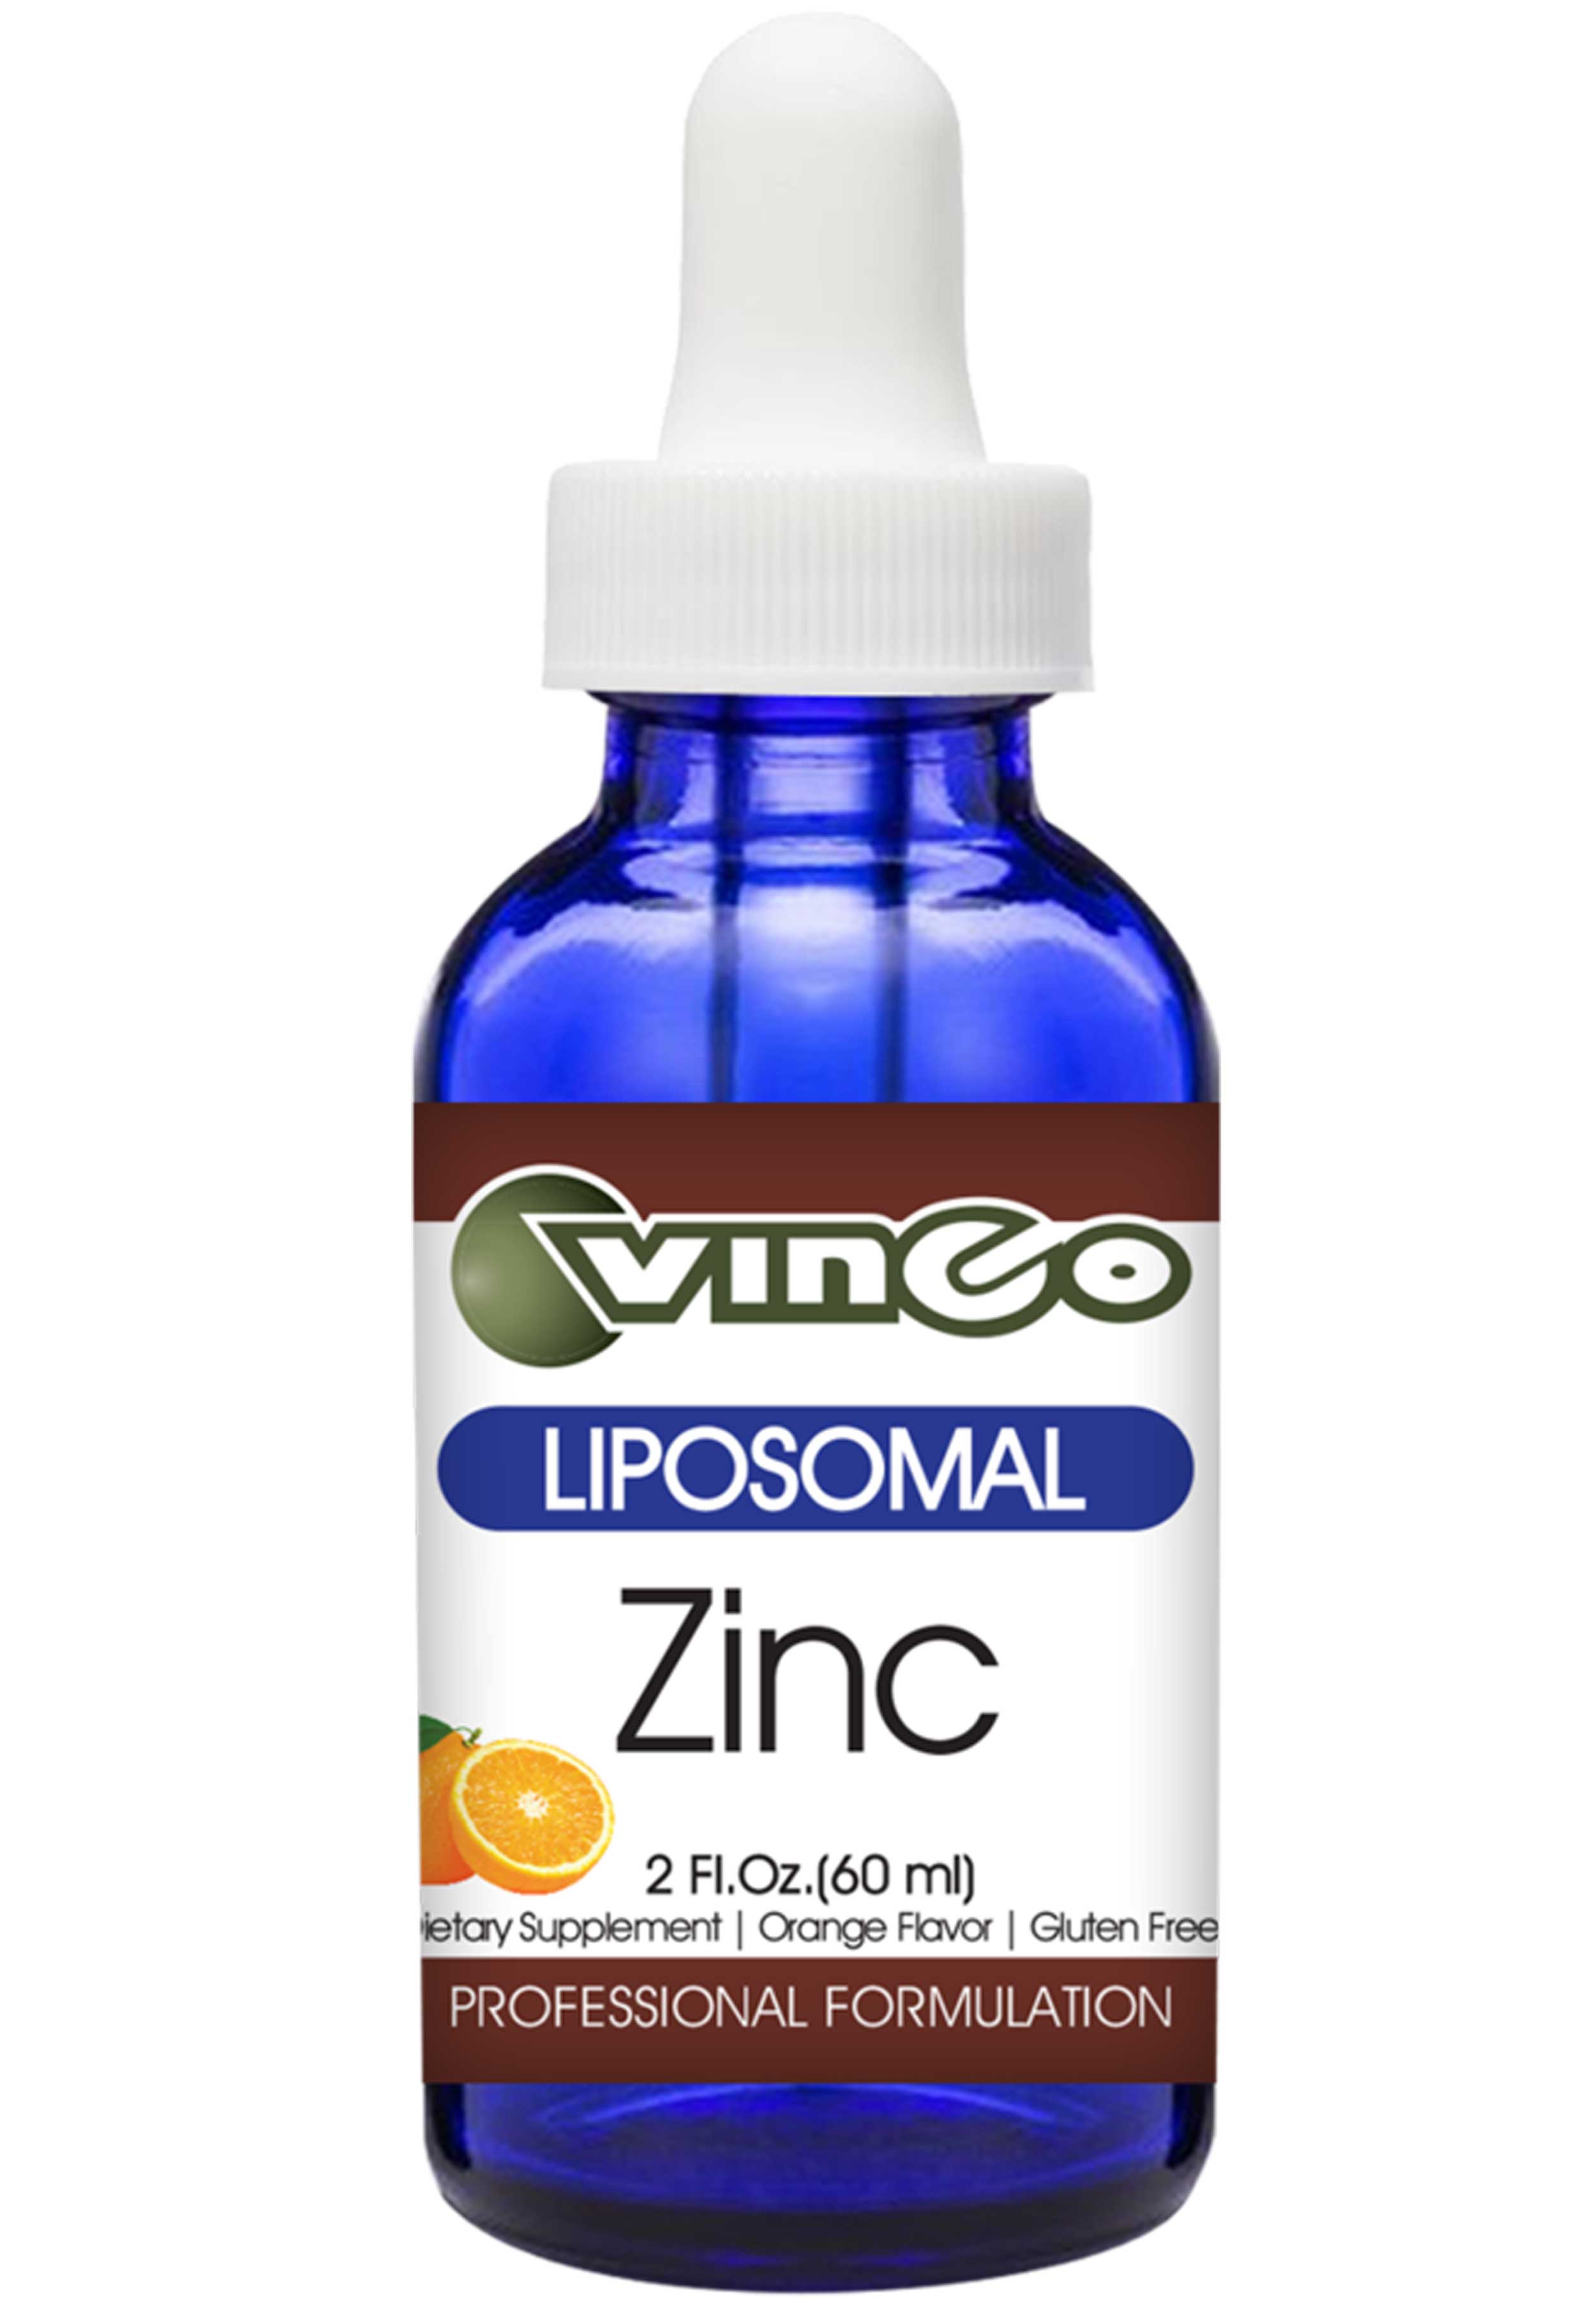 Vinco Zinc (Liposomal)